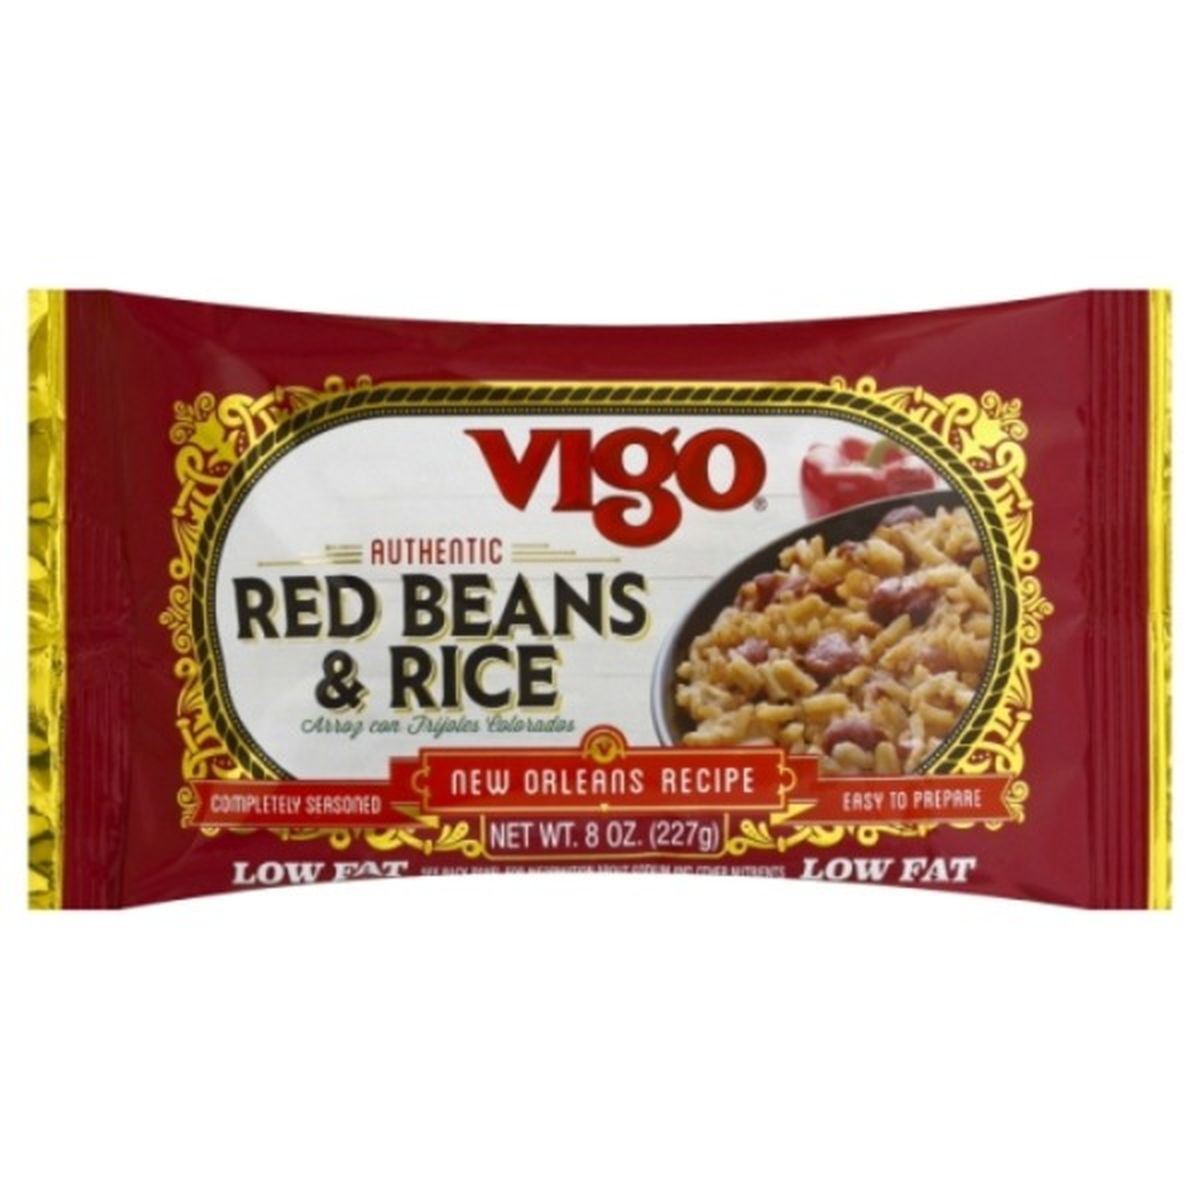 Calories in Vigo Red Beans & Rice, Authentic